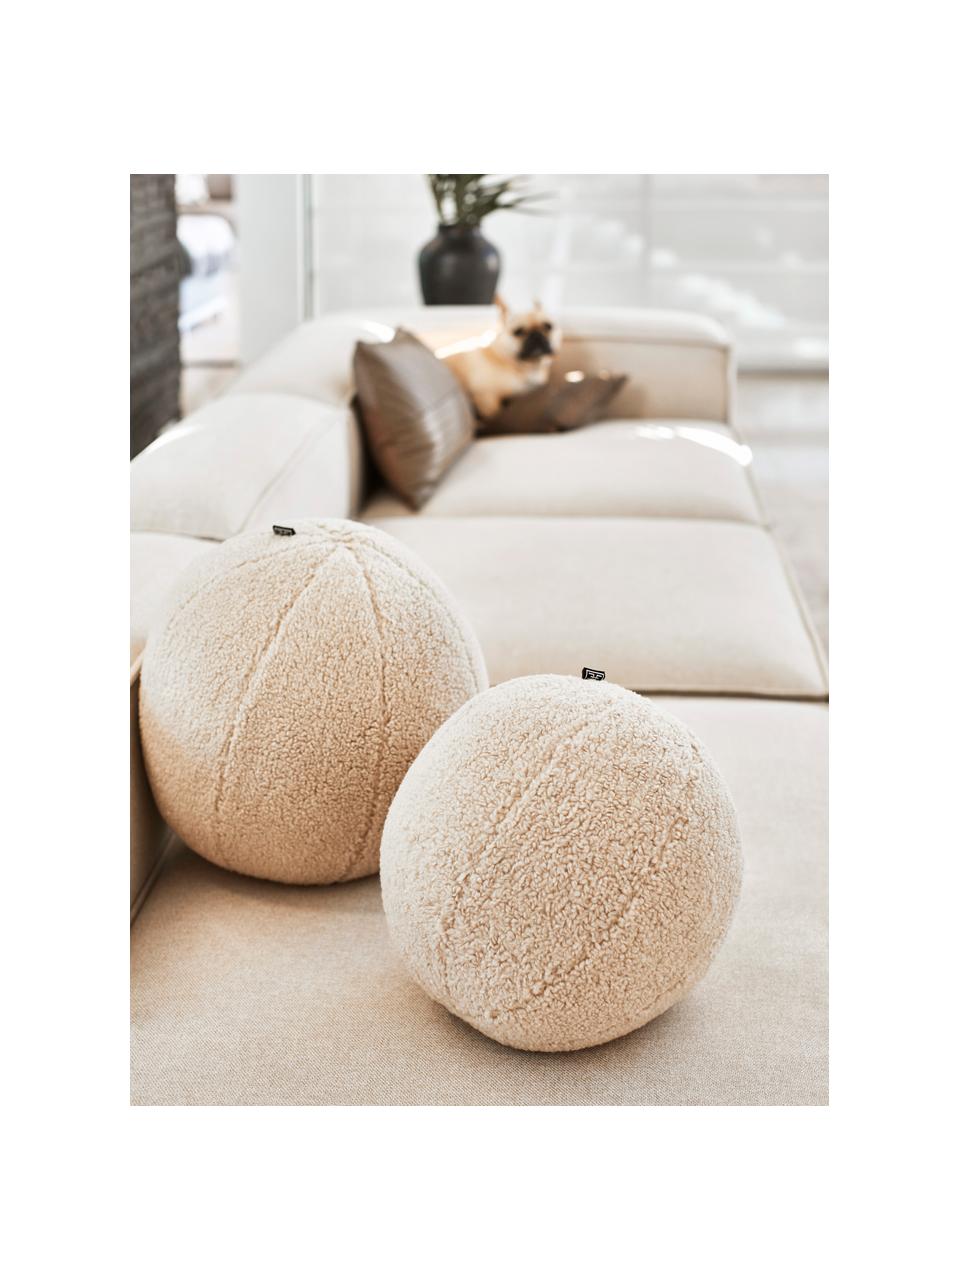 Cuscino in teddy a forma di palla con imbottitura Palla, Rivestimento: 100% poliestere, Color crema, Ø 30